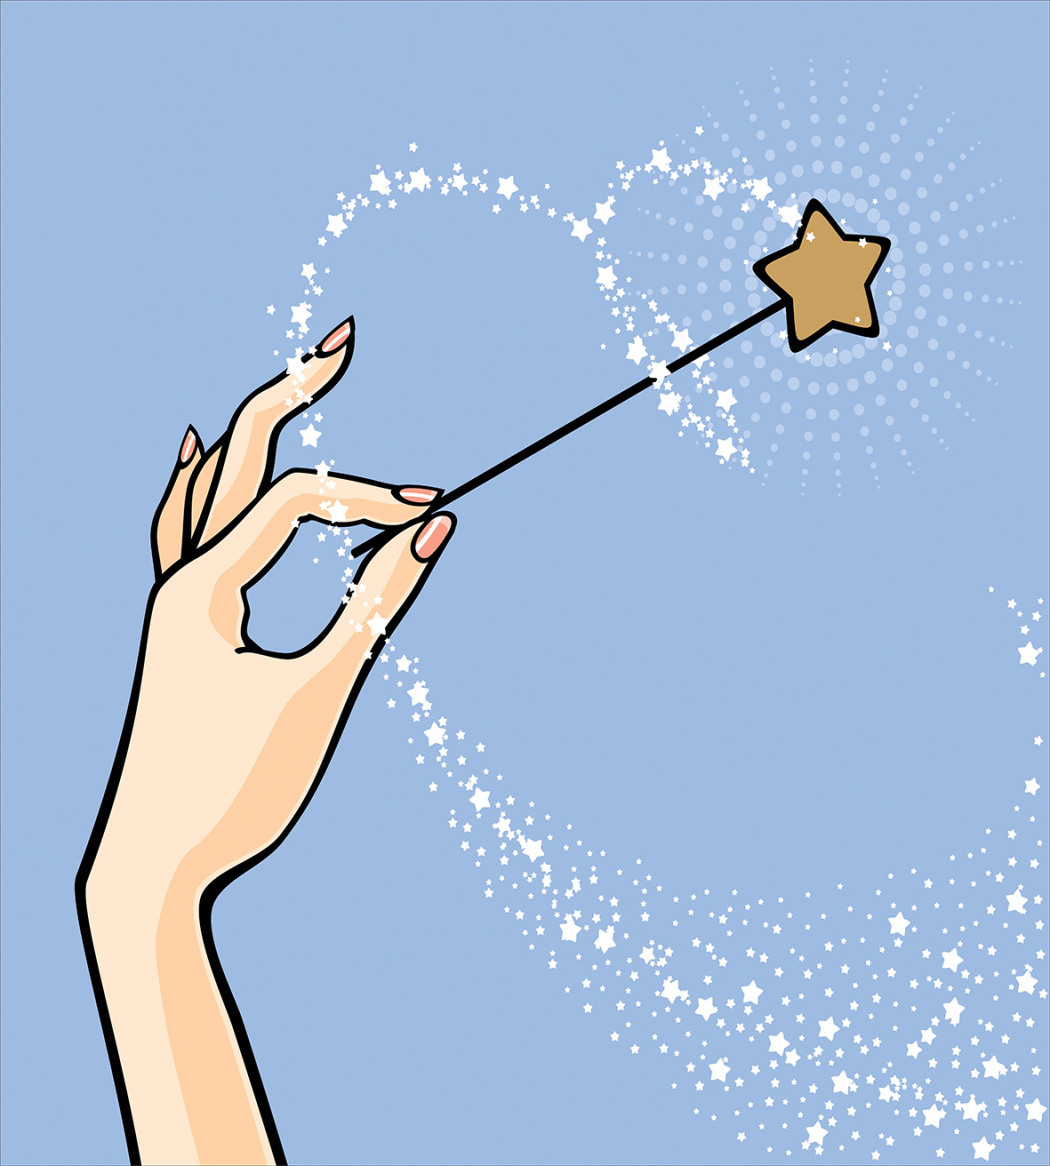 Magic wand cartoon